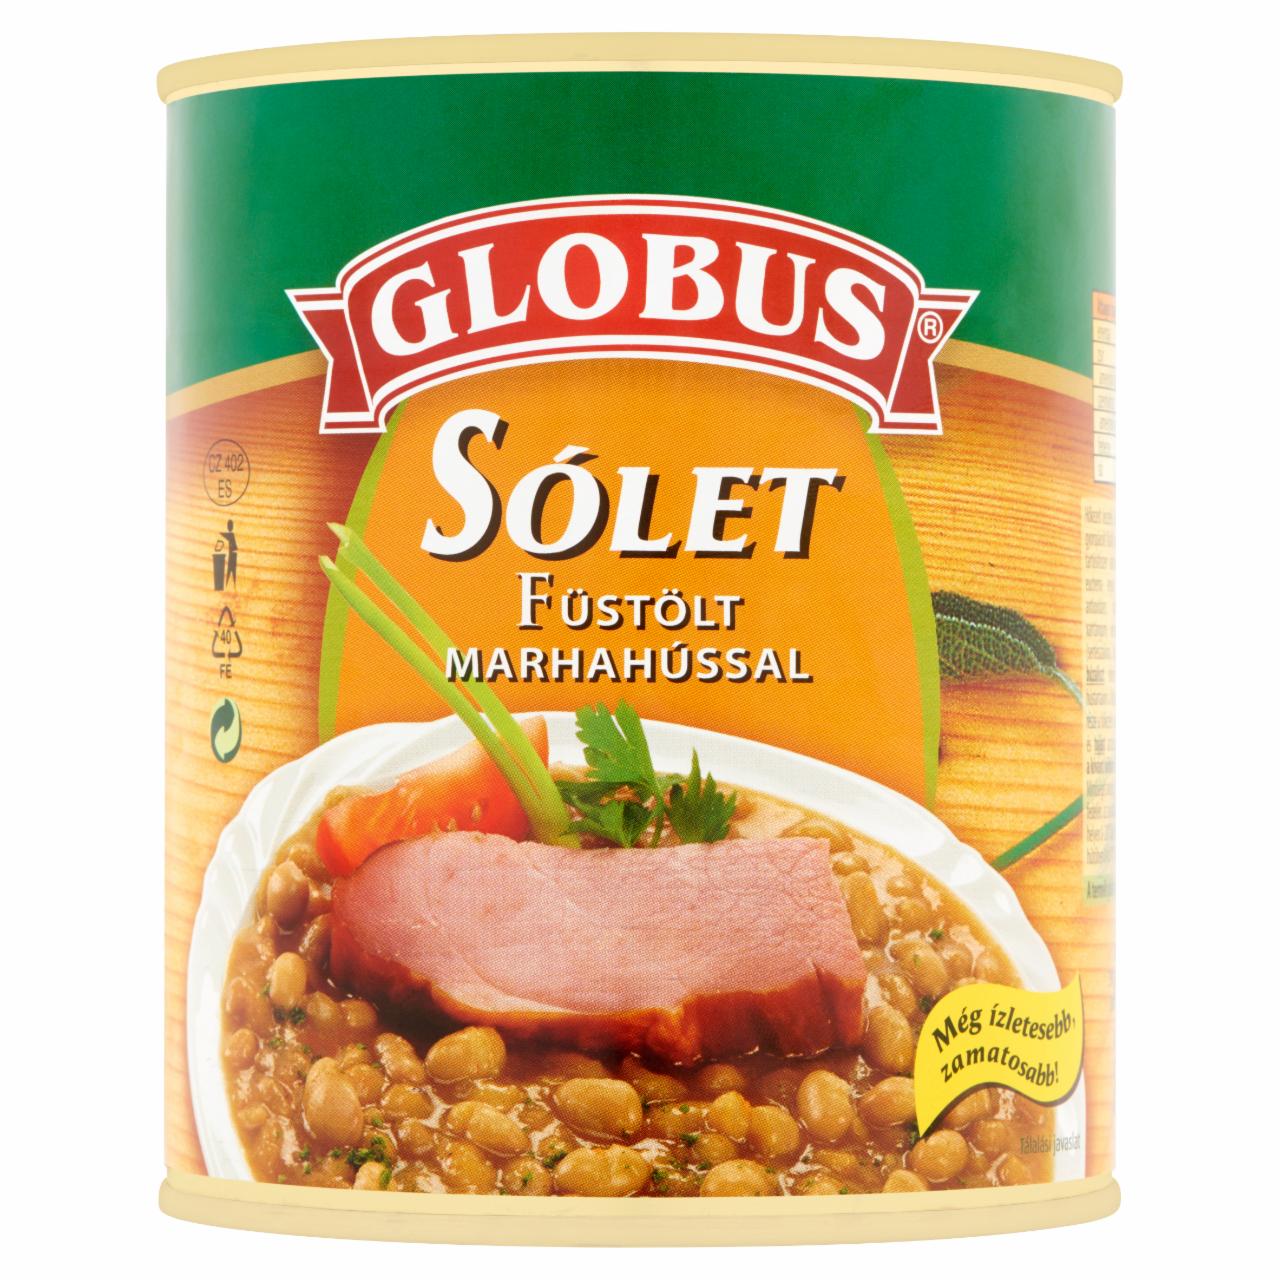 Képek - Globus sólet füstölt marhahússal 860 g